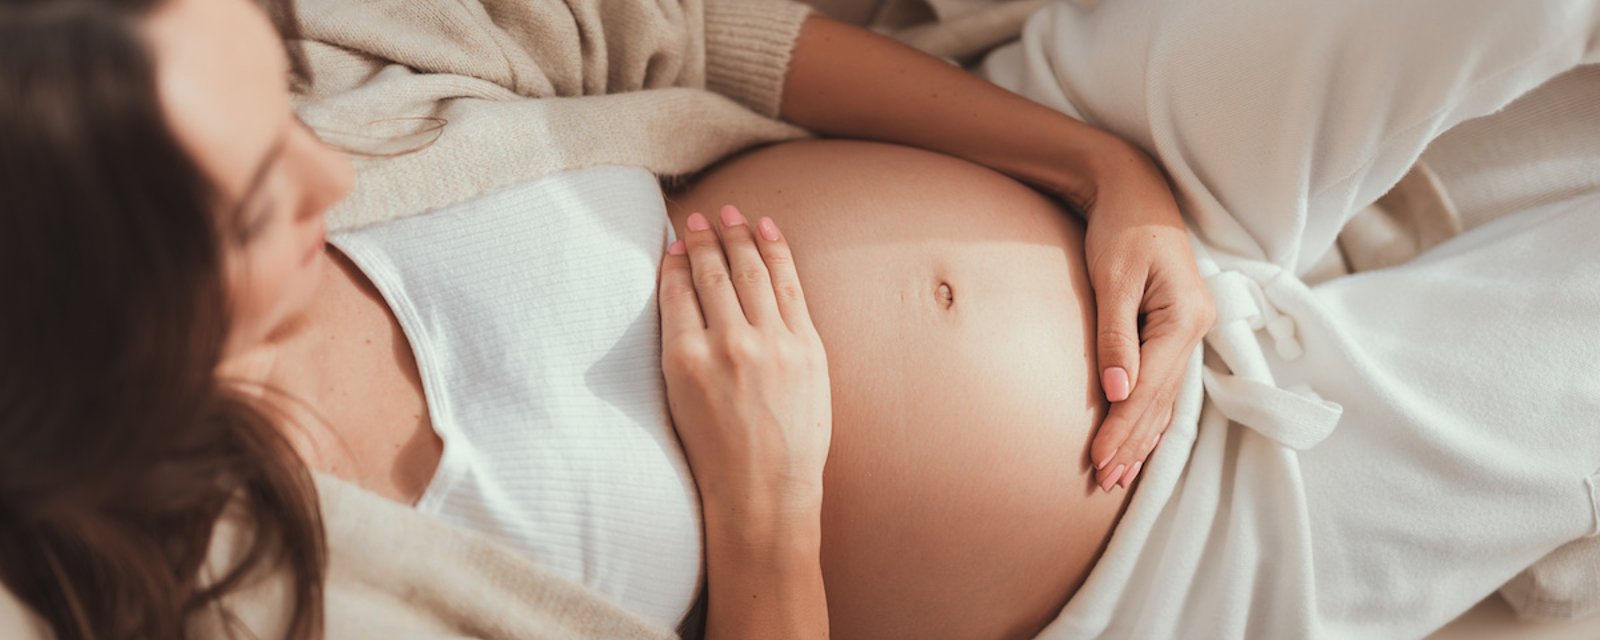 15 astuces simples pour faciliter la vie des femmes enceintes